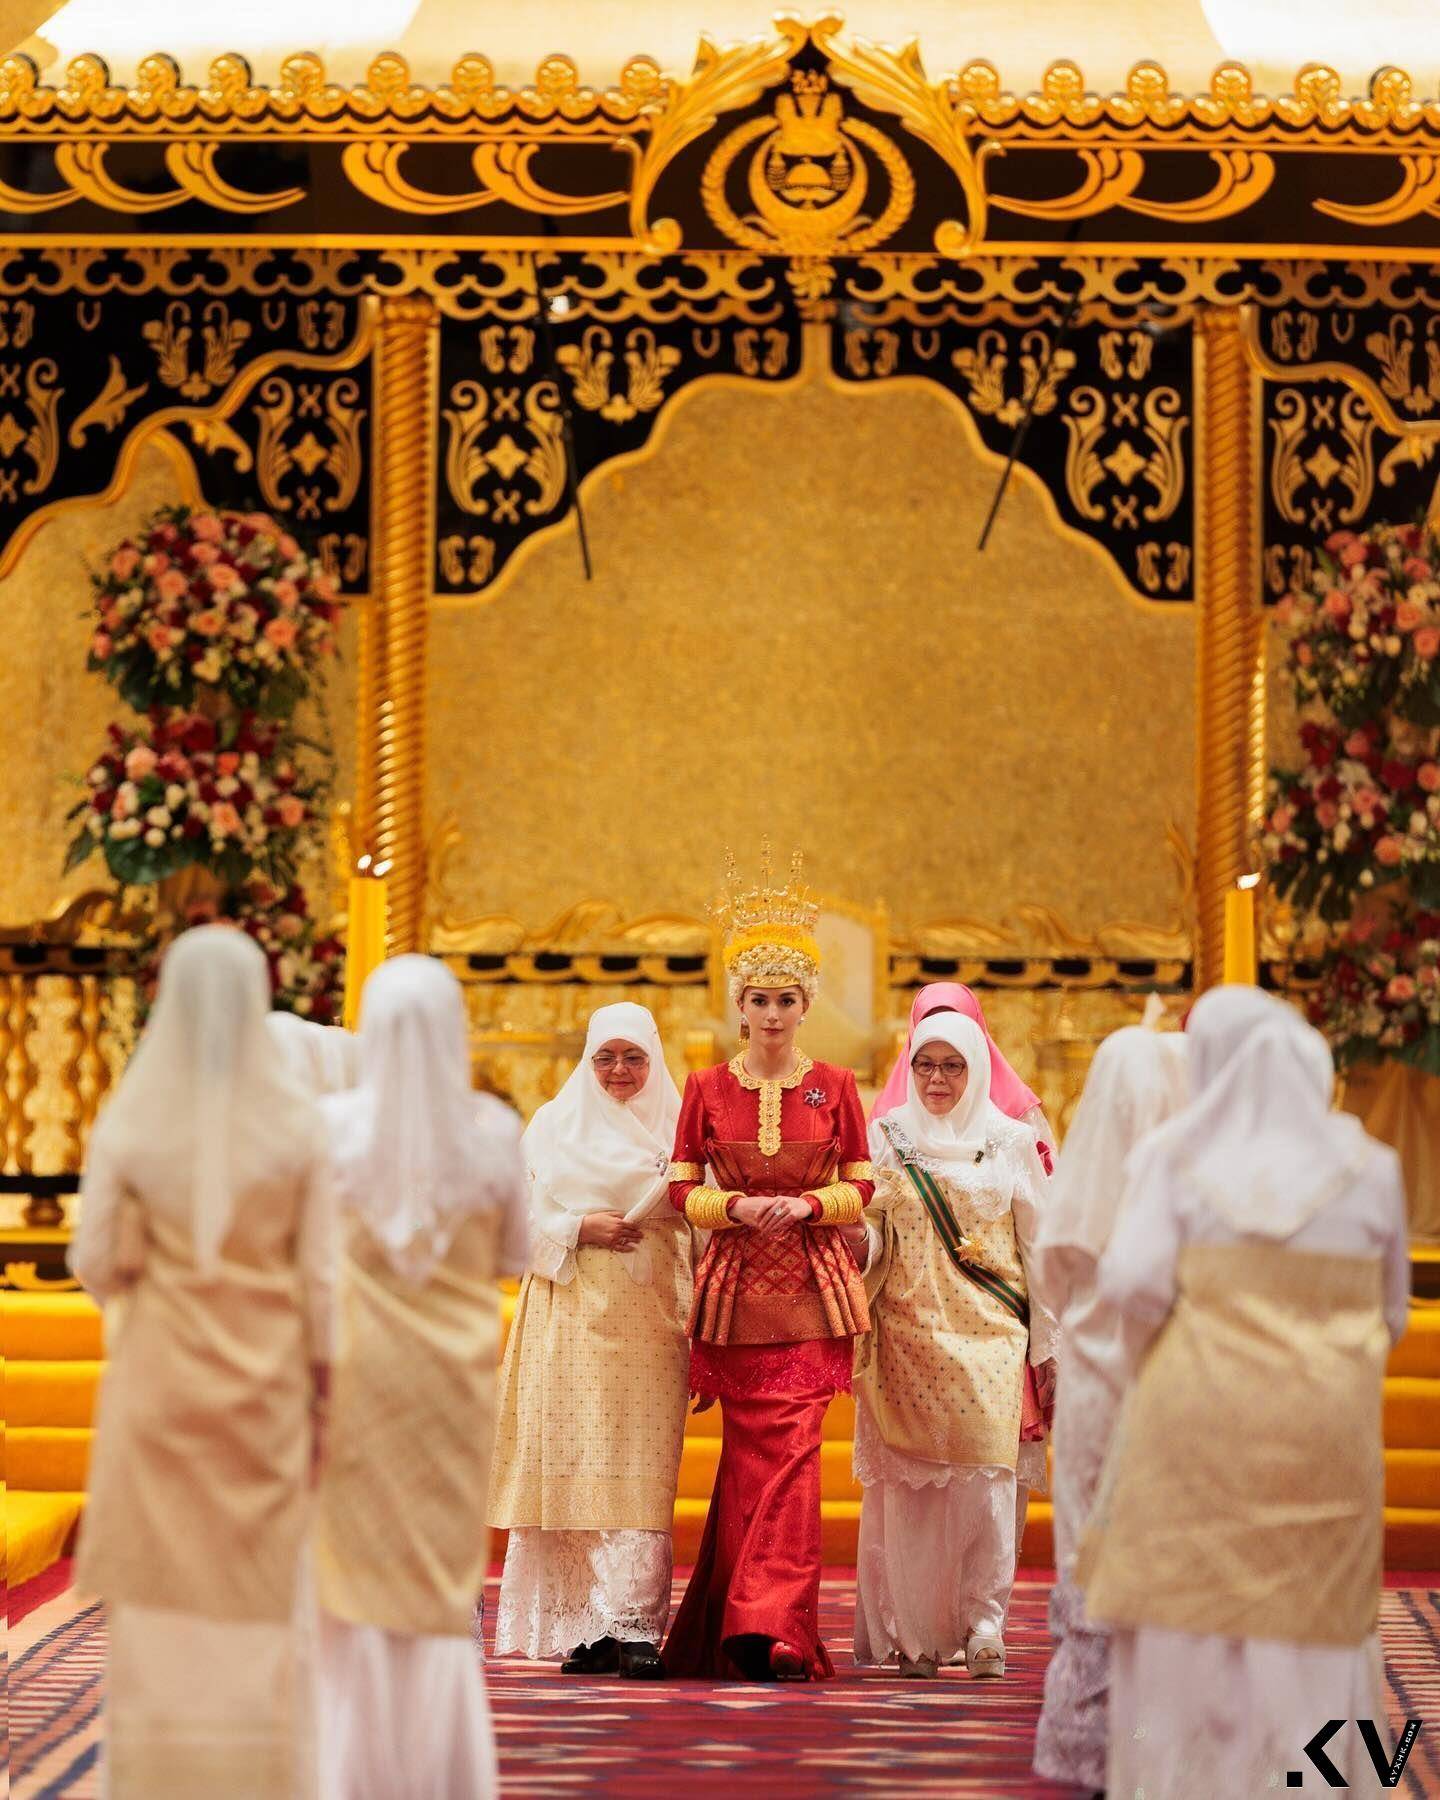 汶莱“亚洲最帅王子”世纪婚礼巨钻闪耀　出卖美娇娘吸奶瓶萌照 时尚穿搭 图4张